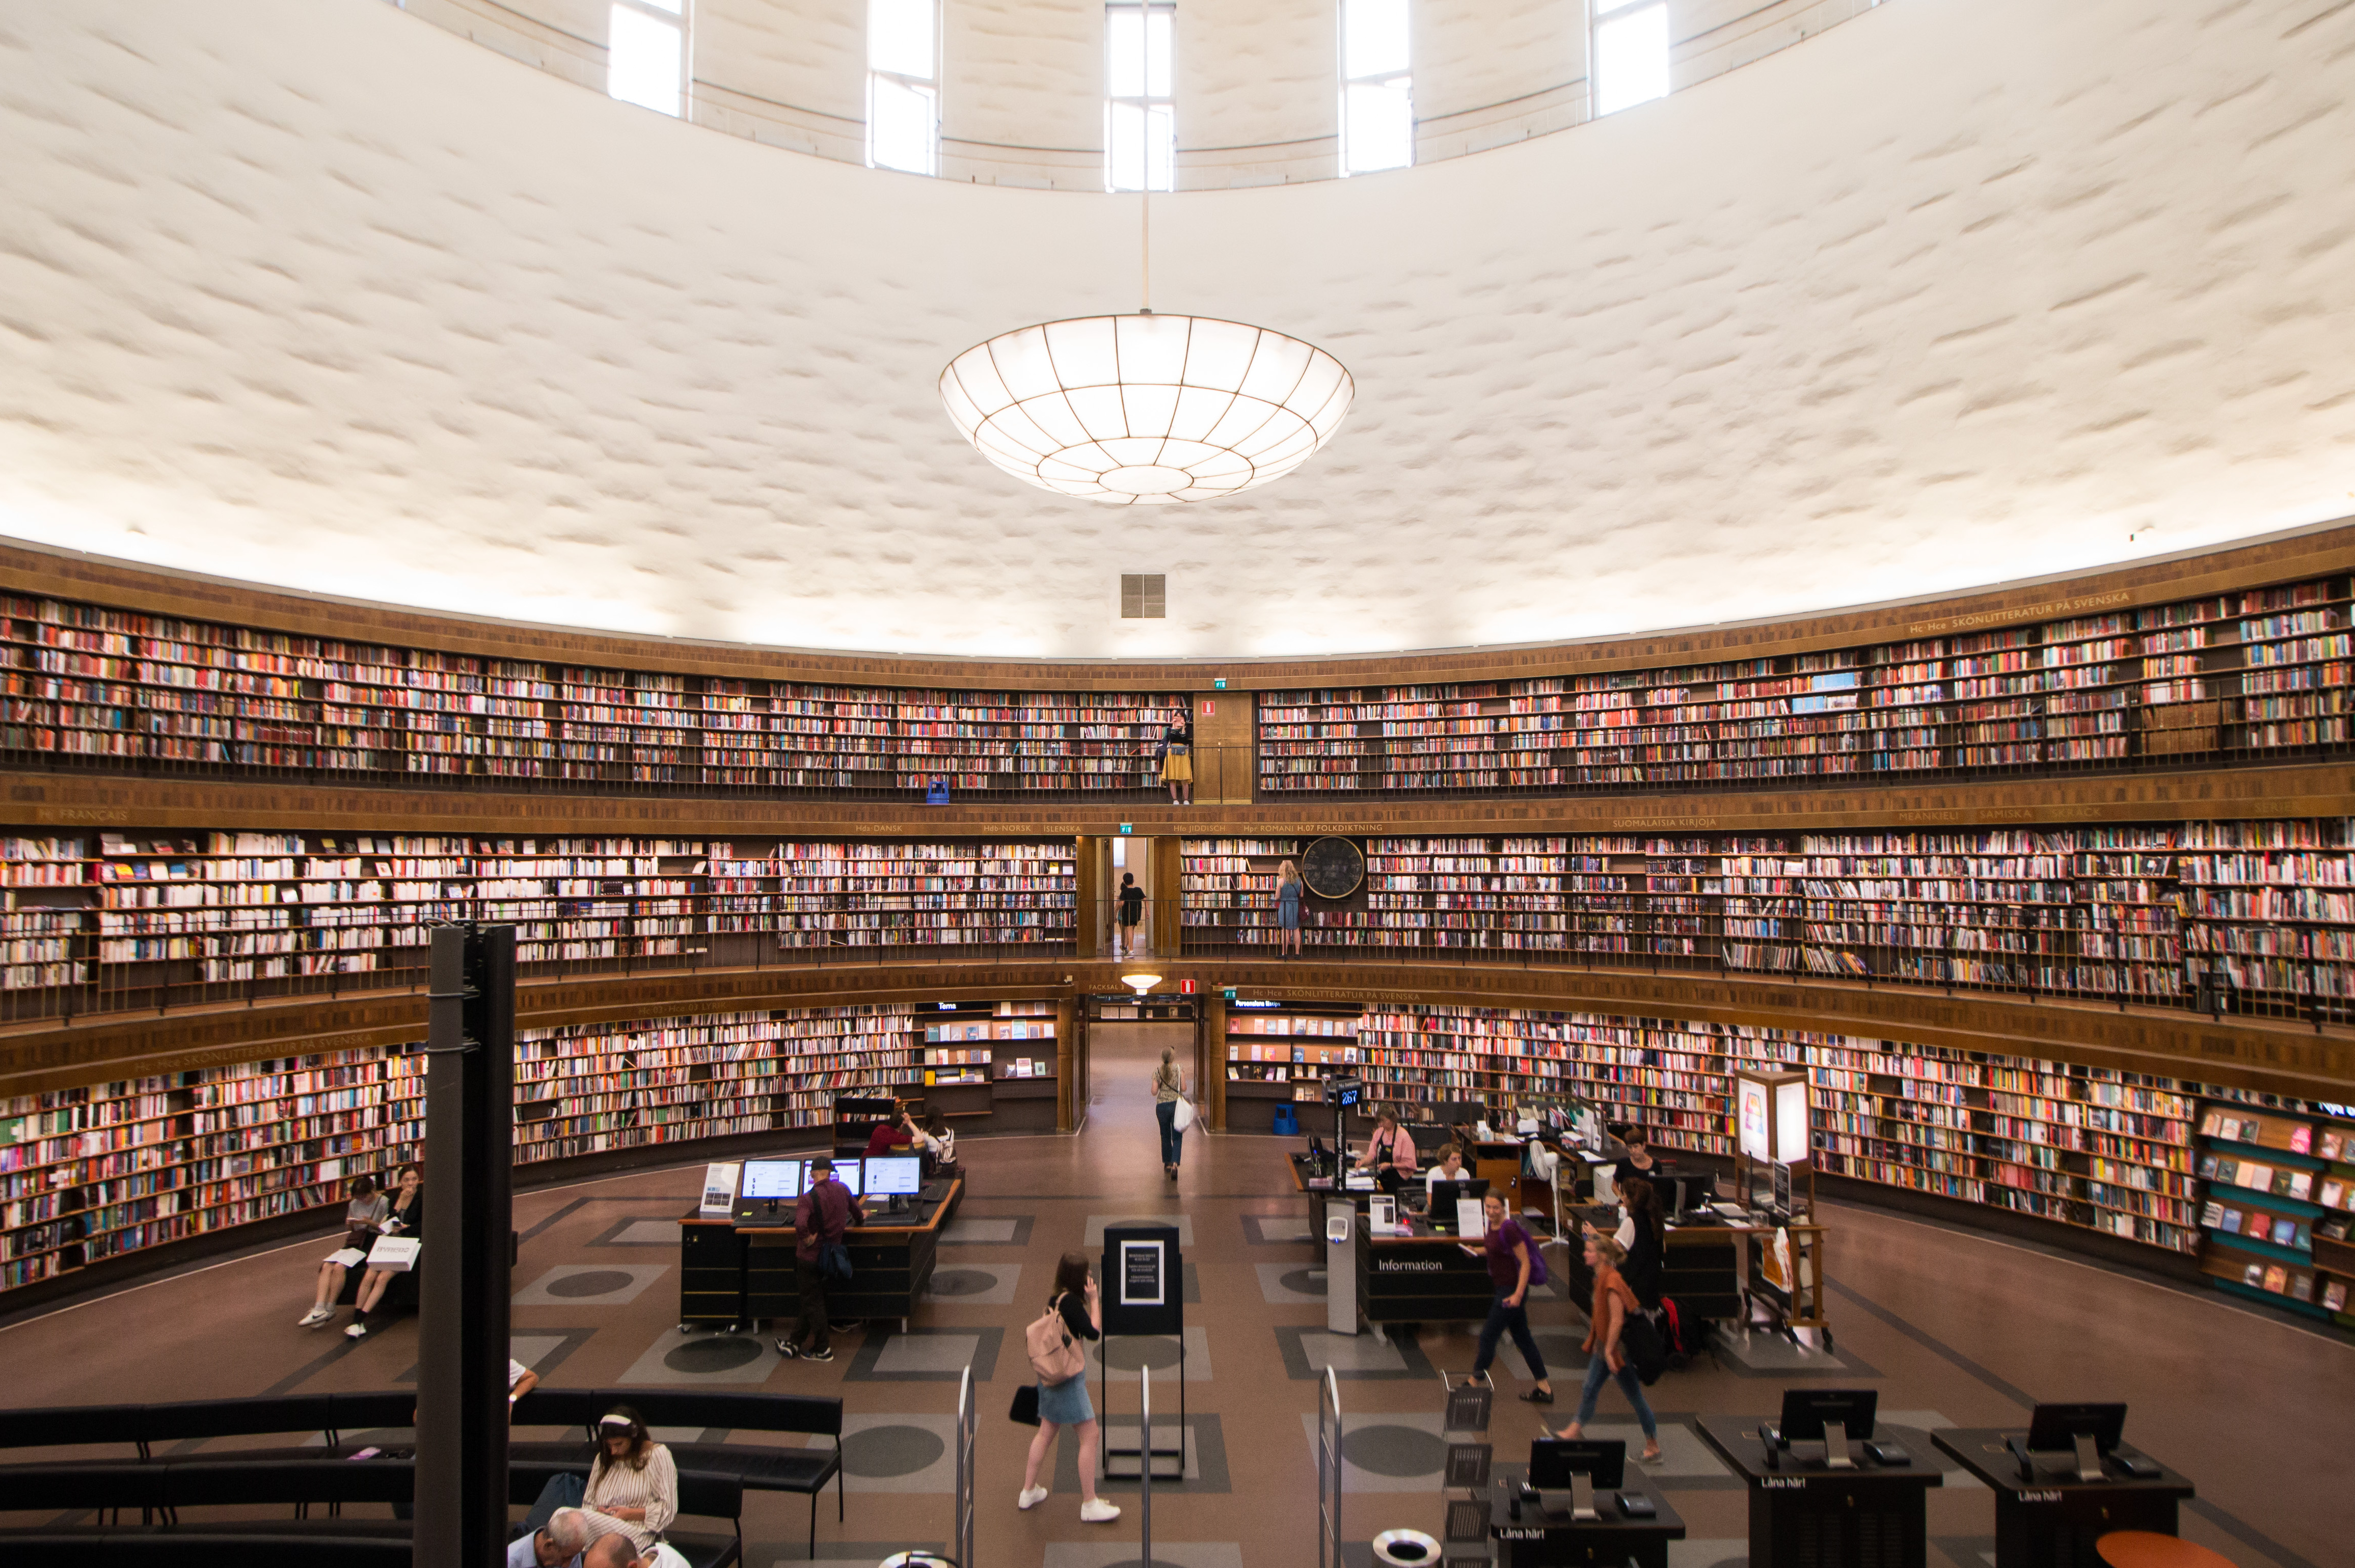 原创 瑞典最大的博物馆,世界最美的图书馆,斯德哥尔摩新的网红打卡地